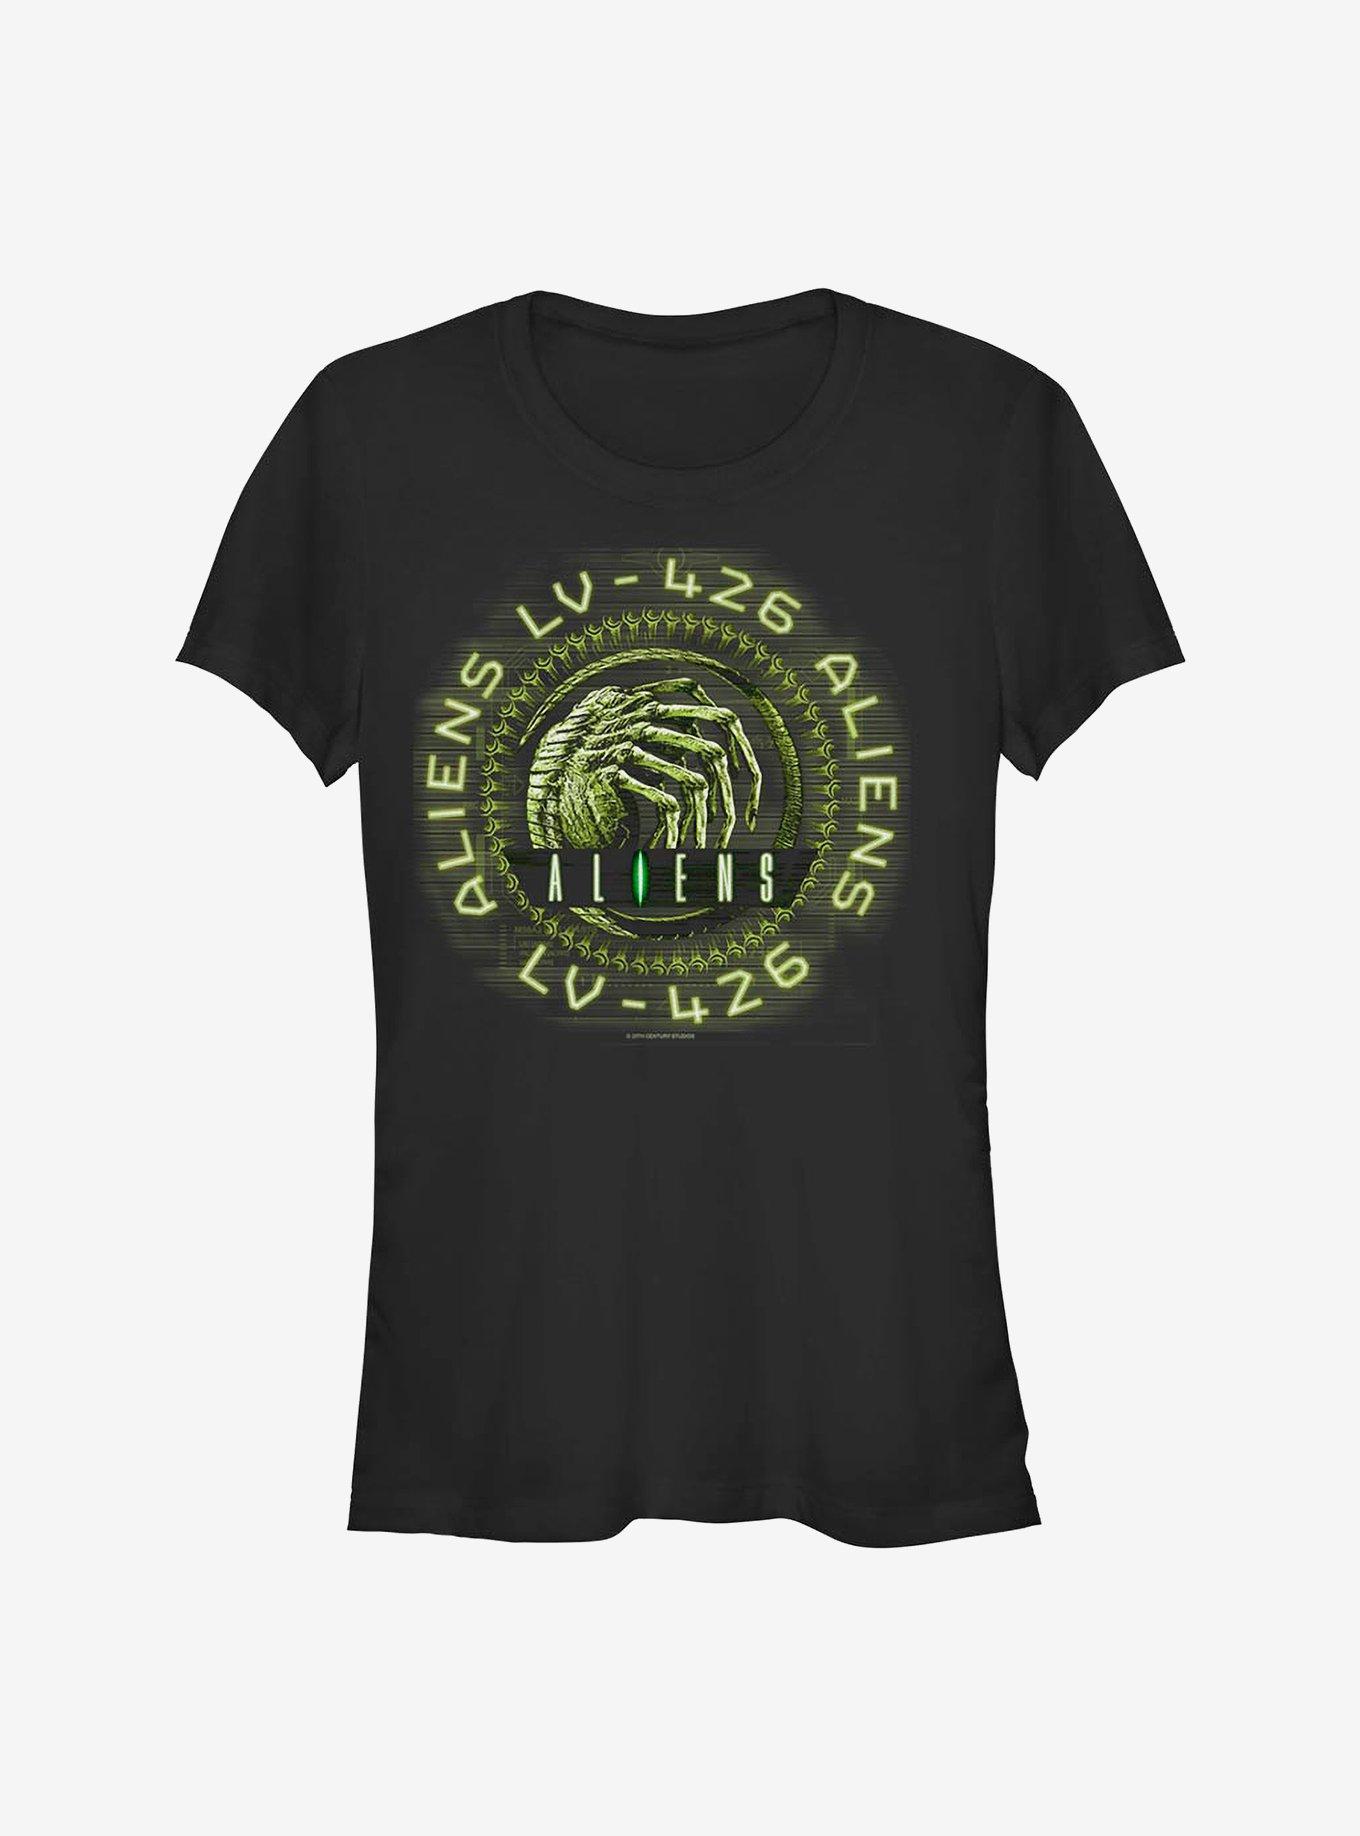 Alien Aliens LV-426 Girls T-Shirt, BLACK, hi-res